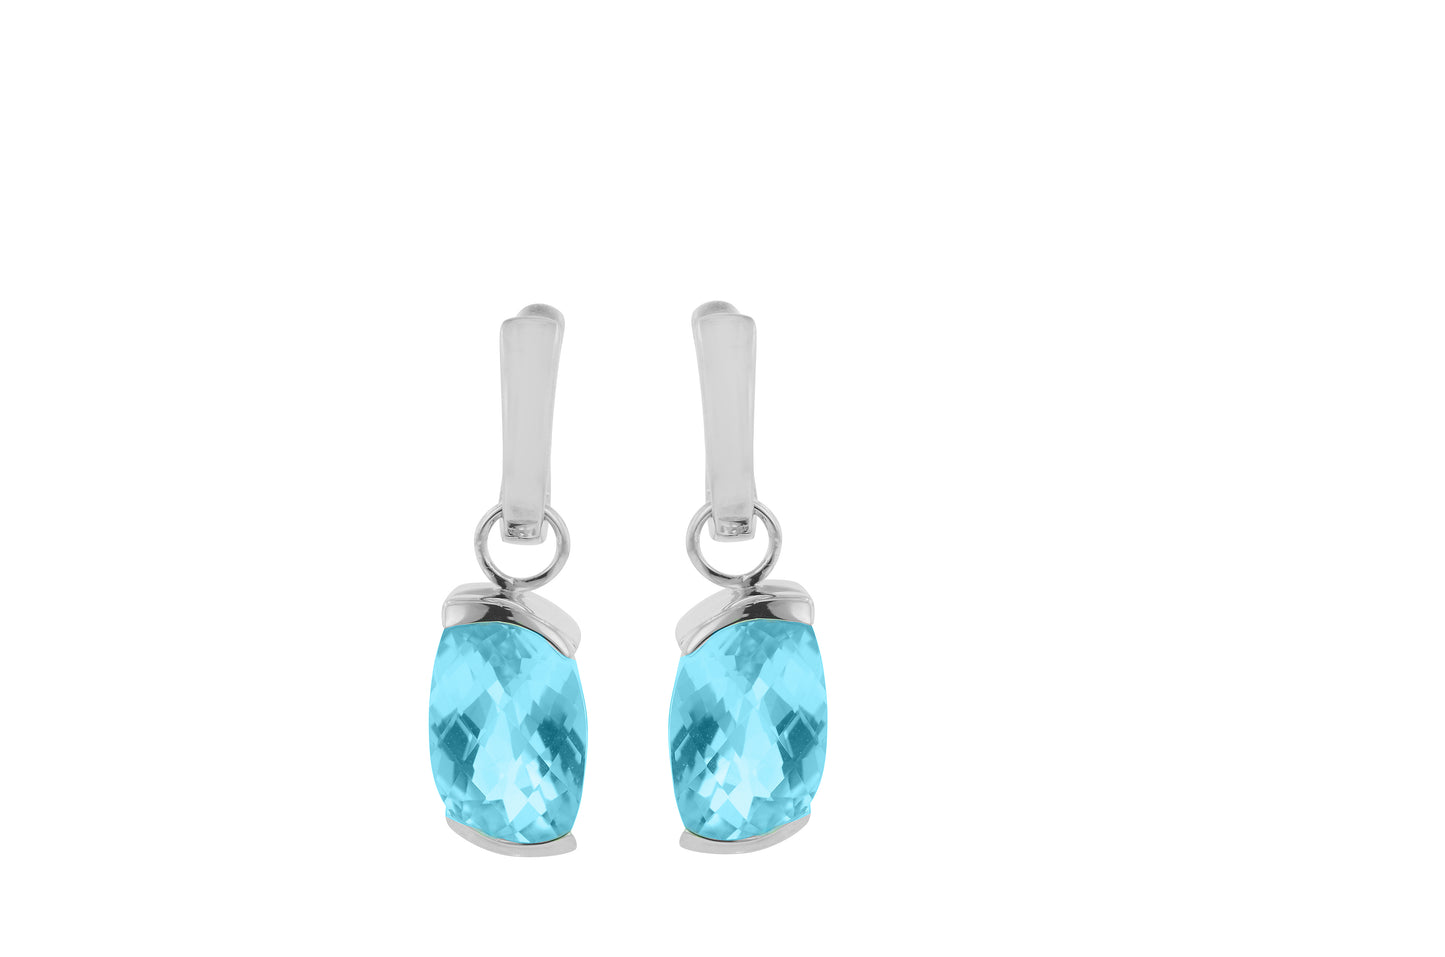 BLUE TOPAZ STERLING SILVER EARRING - Reigning Jewels Fine Jewelry 